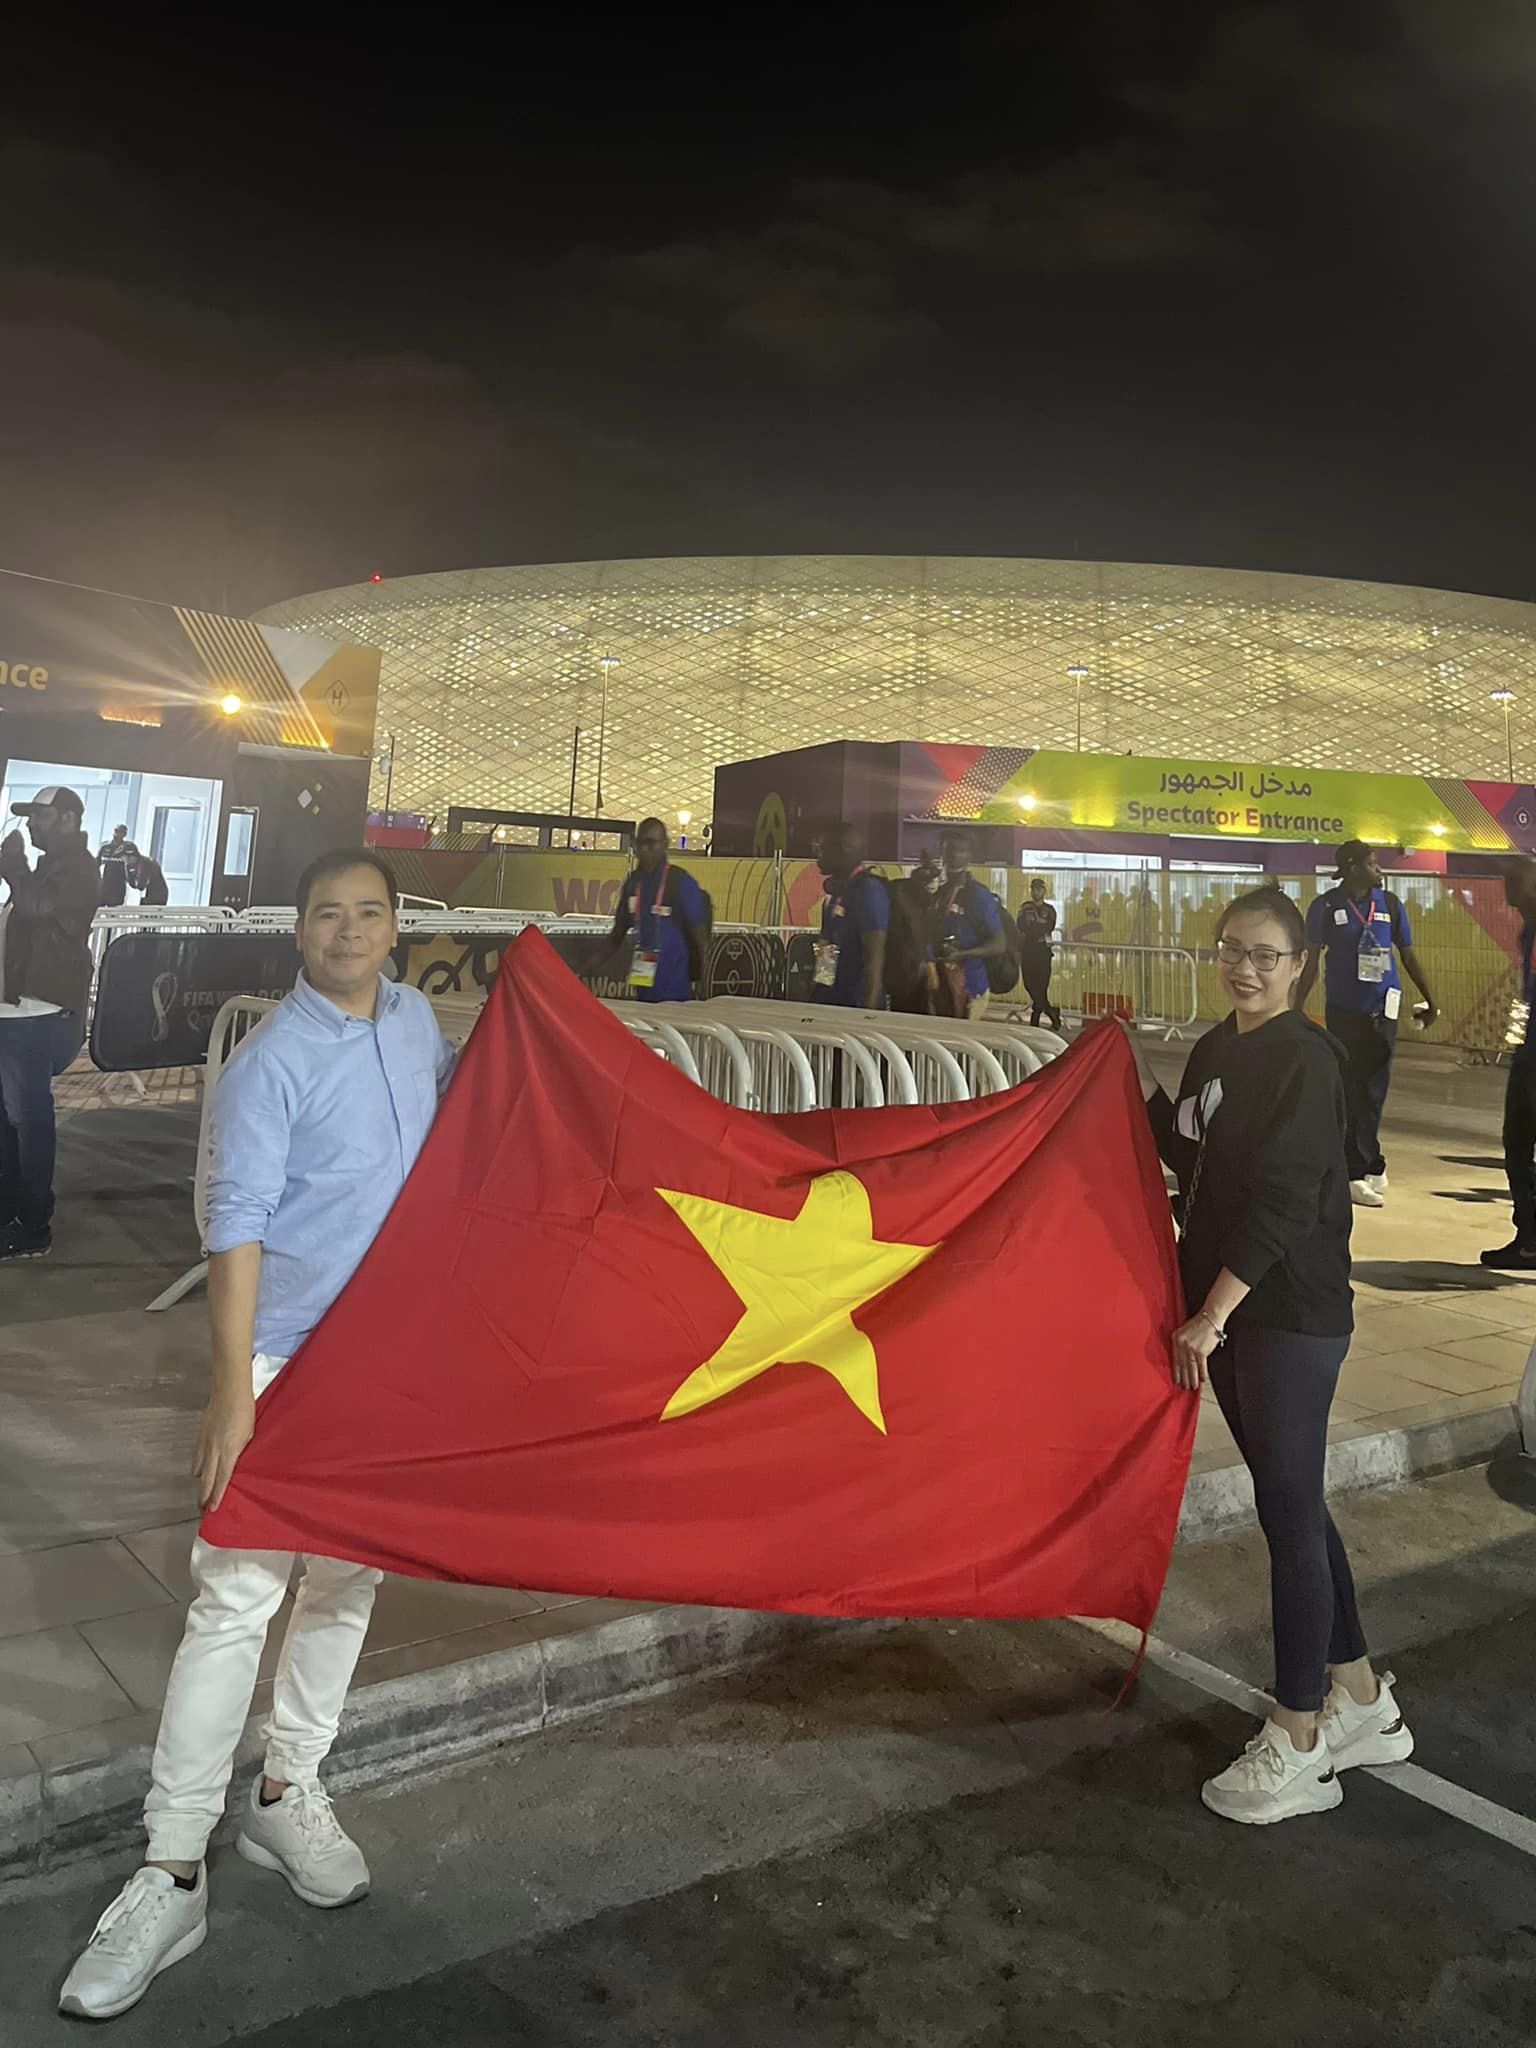 Cờ Việt Nam World Cup Qatar đã trở thành niềm tự hào của hàng triệu người yêu bóng đá Việt Nam. Được hiển thị trên khán đài giải đấu, mảnh vải mang màu sắc và hình ảnh đặc trưng của quốc gia đã góp phần làm nên nét đẹp đặc biệt của giải đấu. Hãy cùng chúng tôi lưu giữ lại những khoảnh khắc đầy ý nghĩa của cờ Việt Nam World Cup Qatar thông qua hình ảnh đầy cảm xúc này.